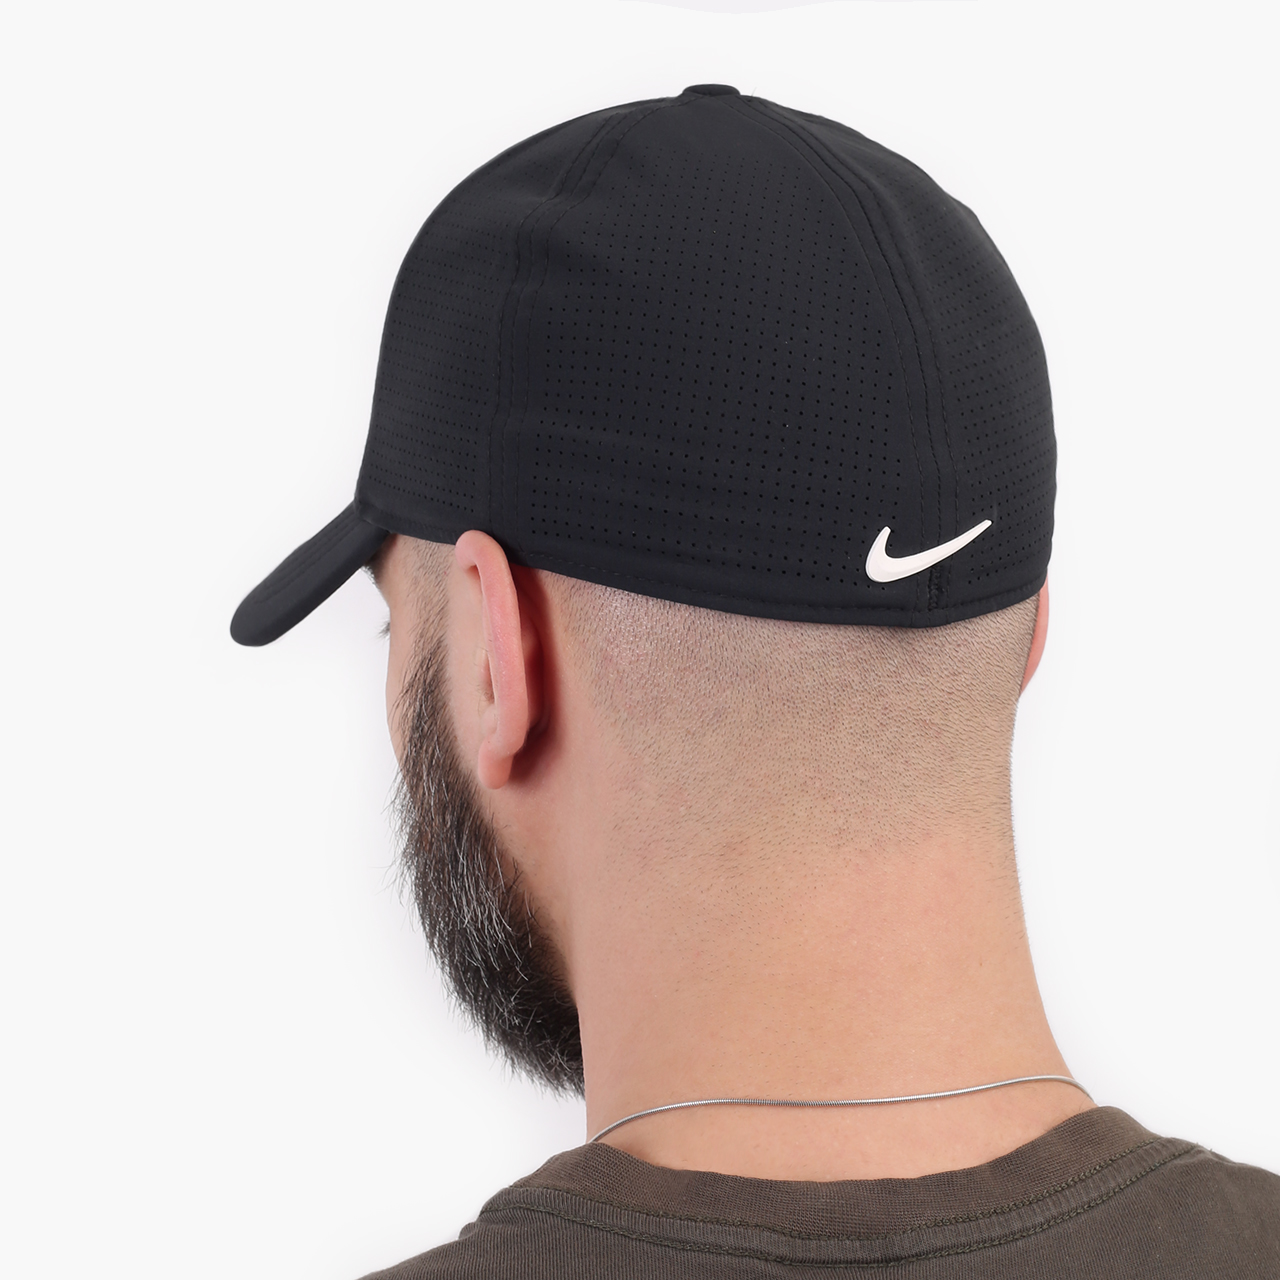  черная кепка Nike AeroBill Tiger Woods Heritage86 Perforated Cap CW6792-010 - цена, описание, фото 2